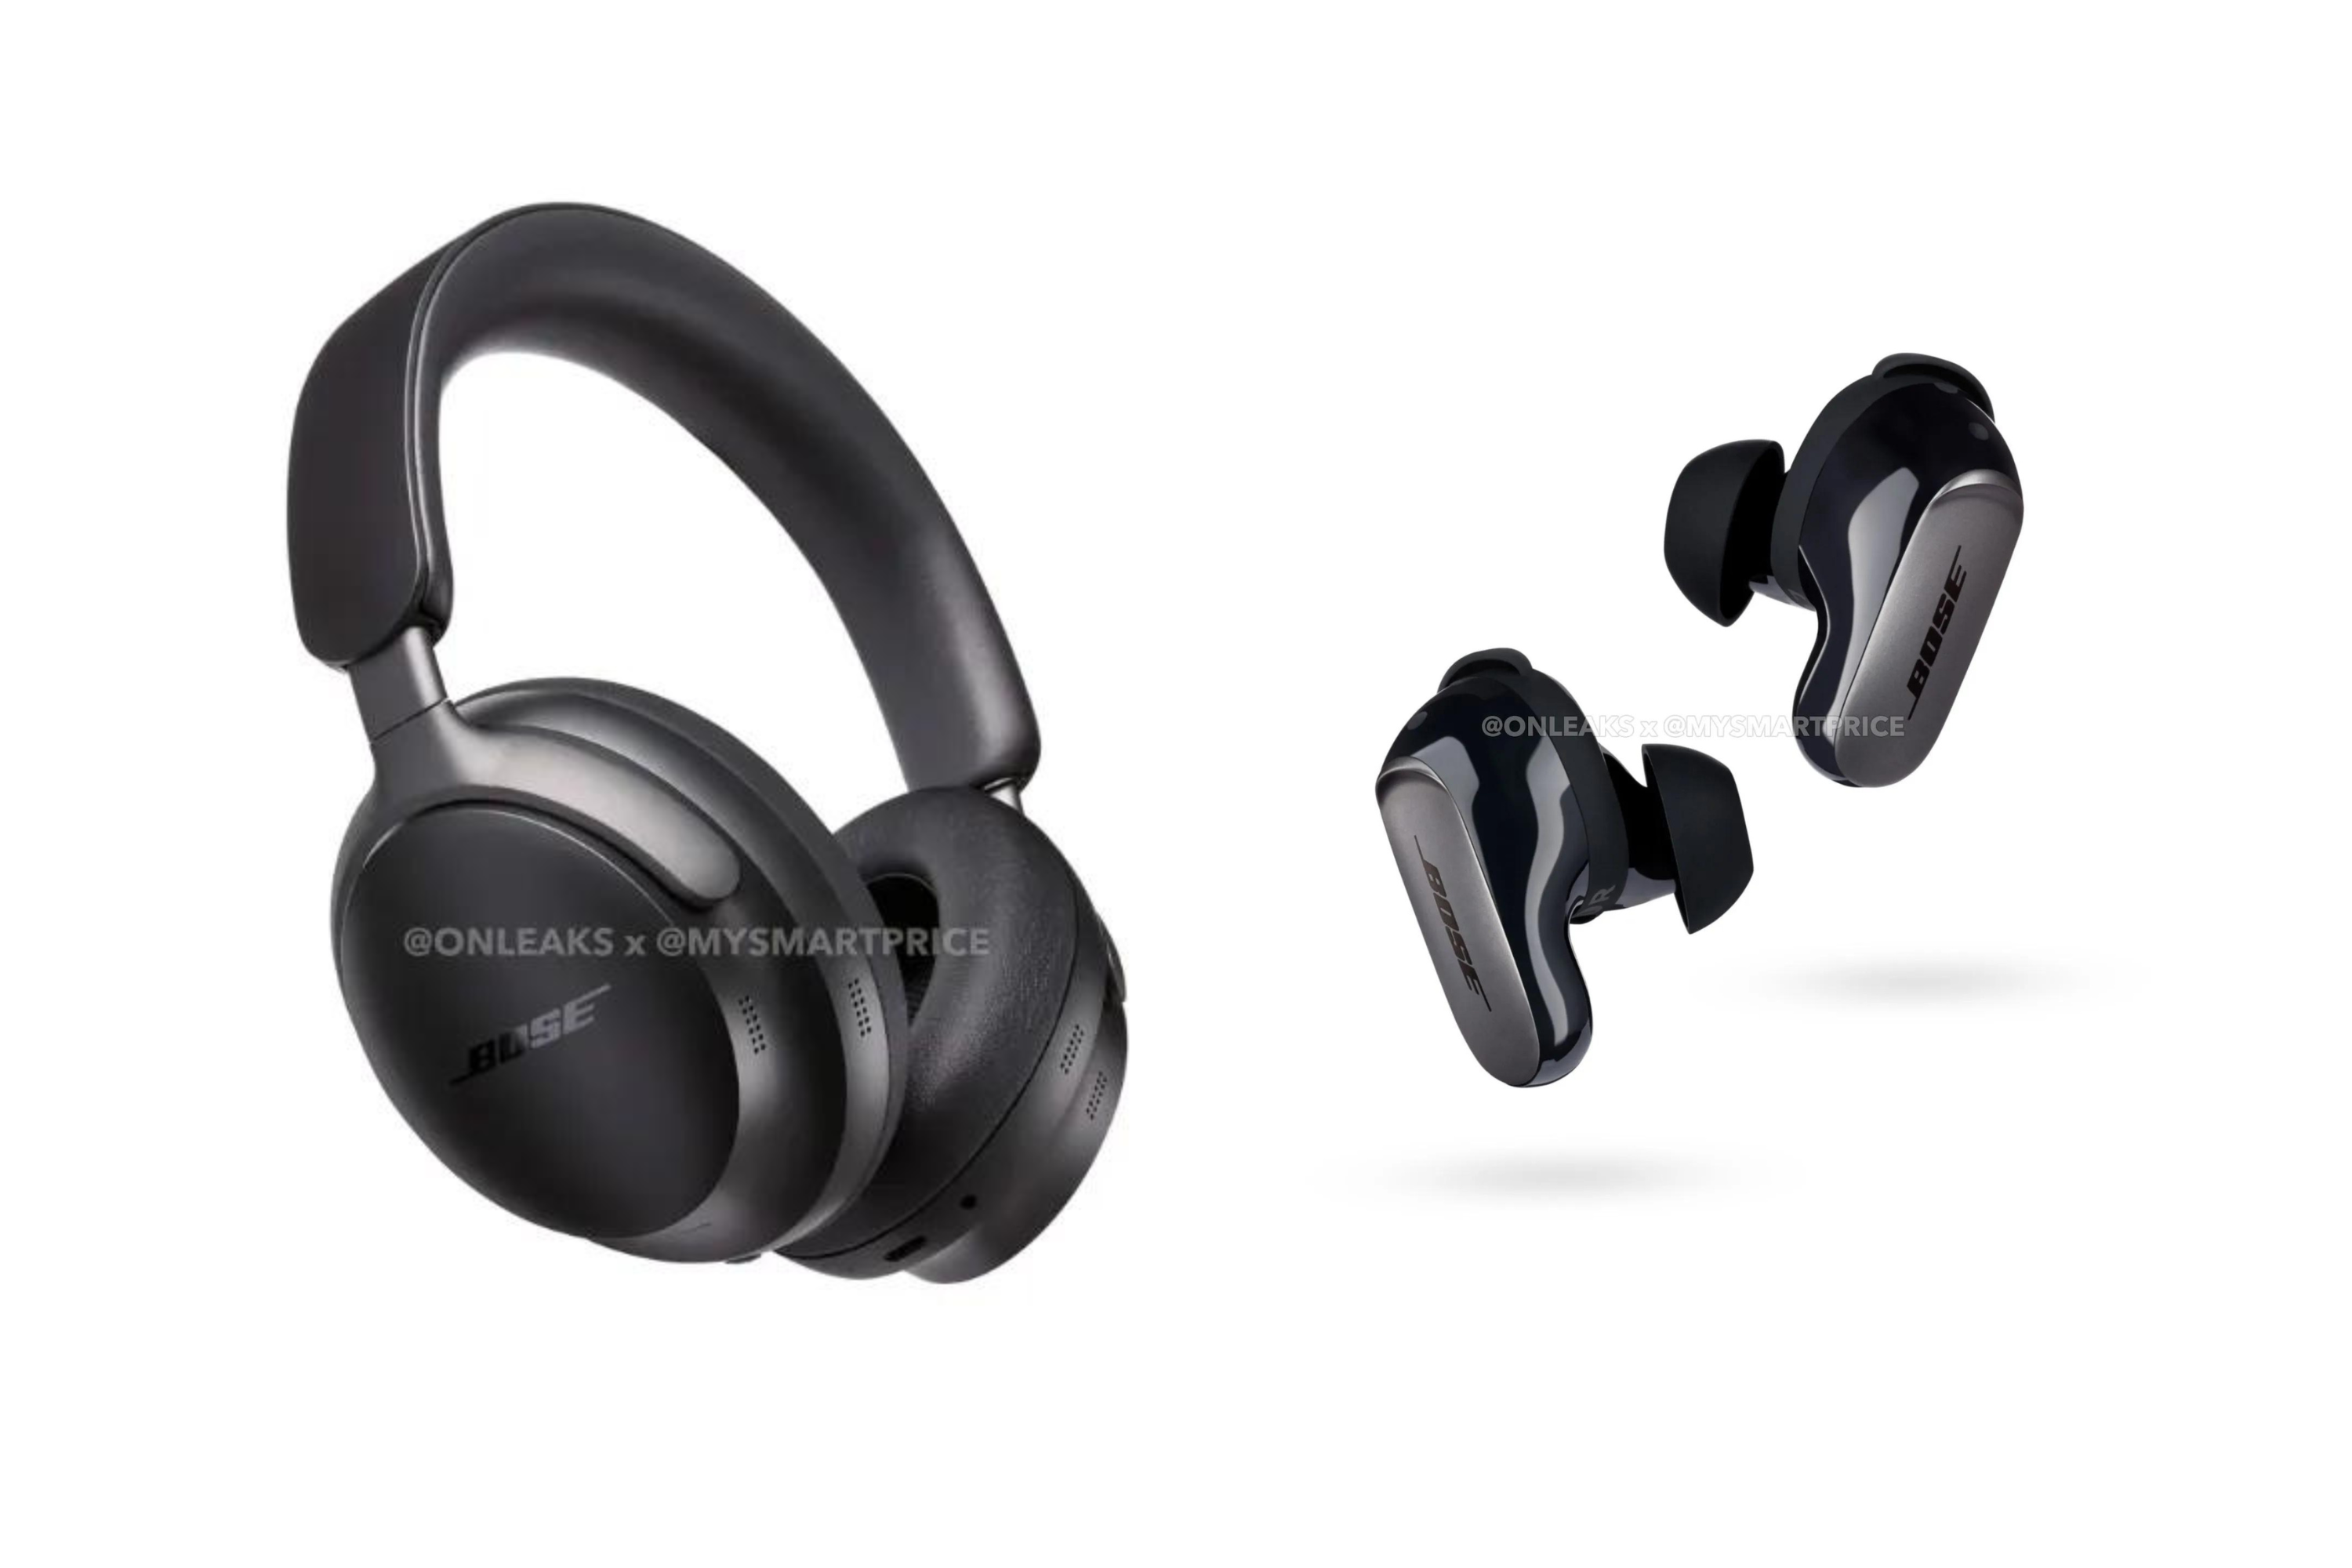 Boses QuietComfort-Kopfhörer und -Ohrhörer der nächsten Generation wurden in neu durchgesickerten Renderings enthüllt